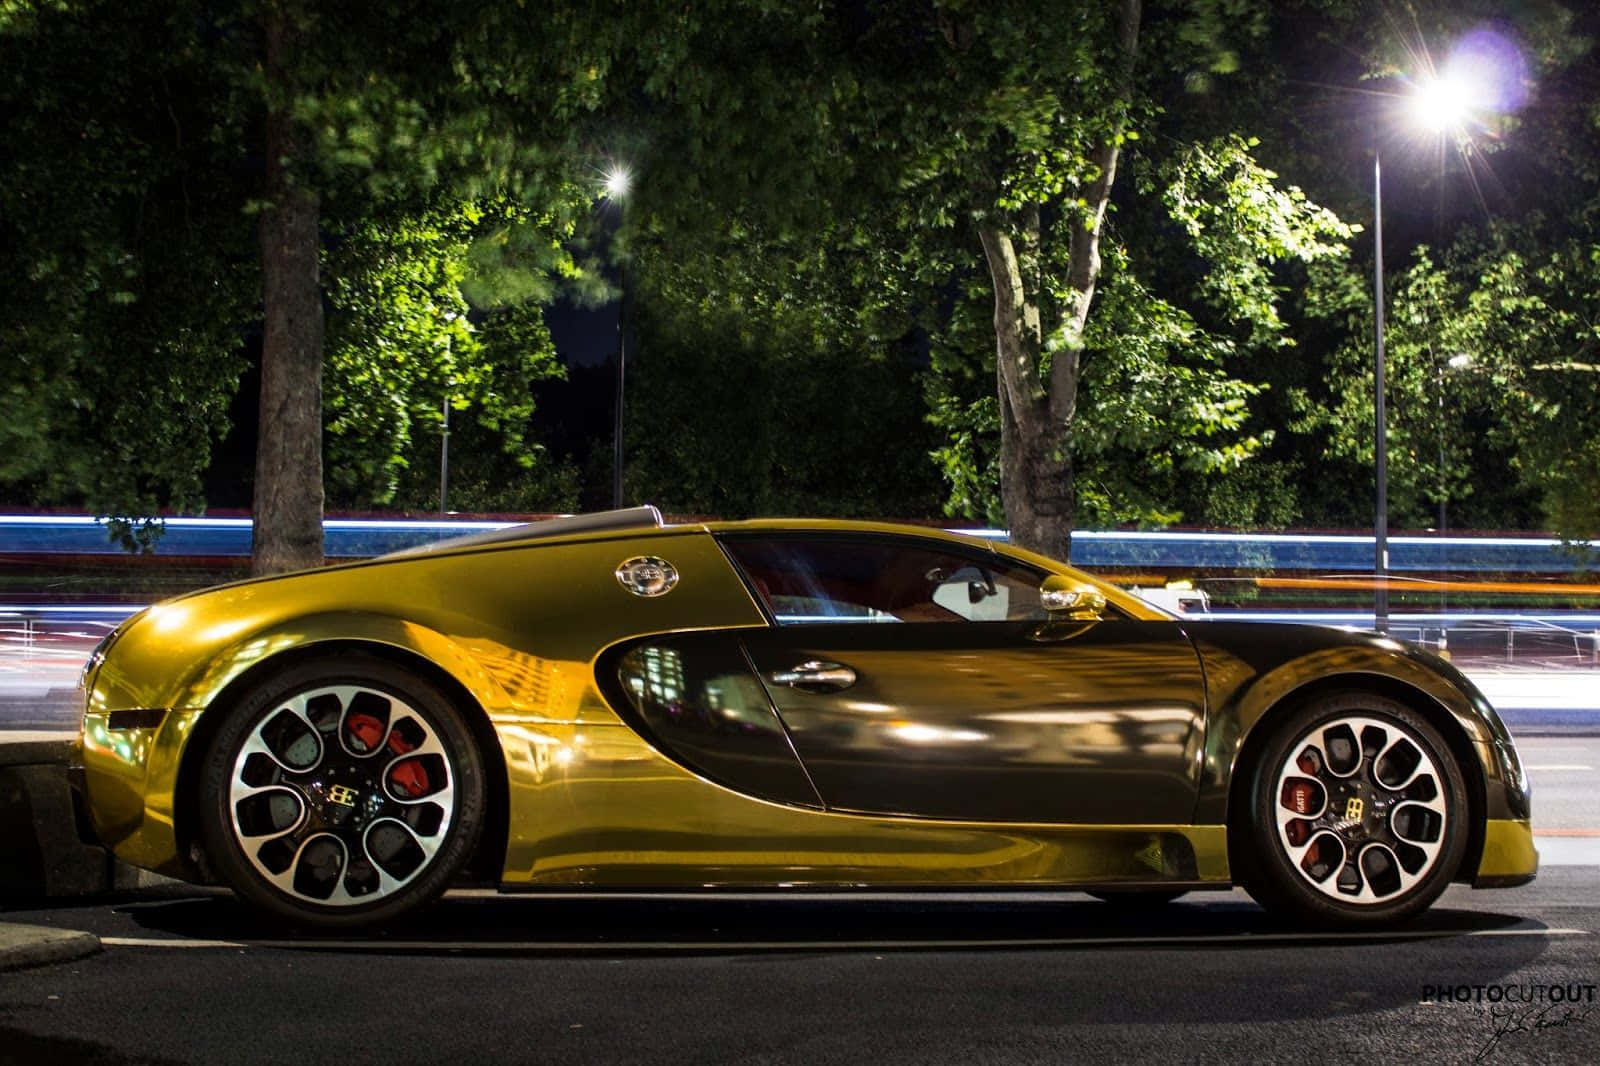 Gold Bugatti Veyron Car At Night Wallpaper